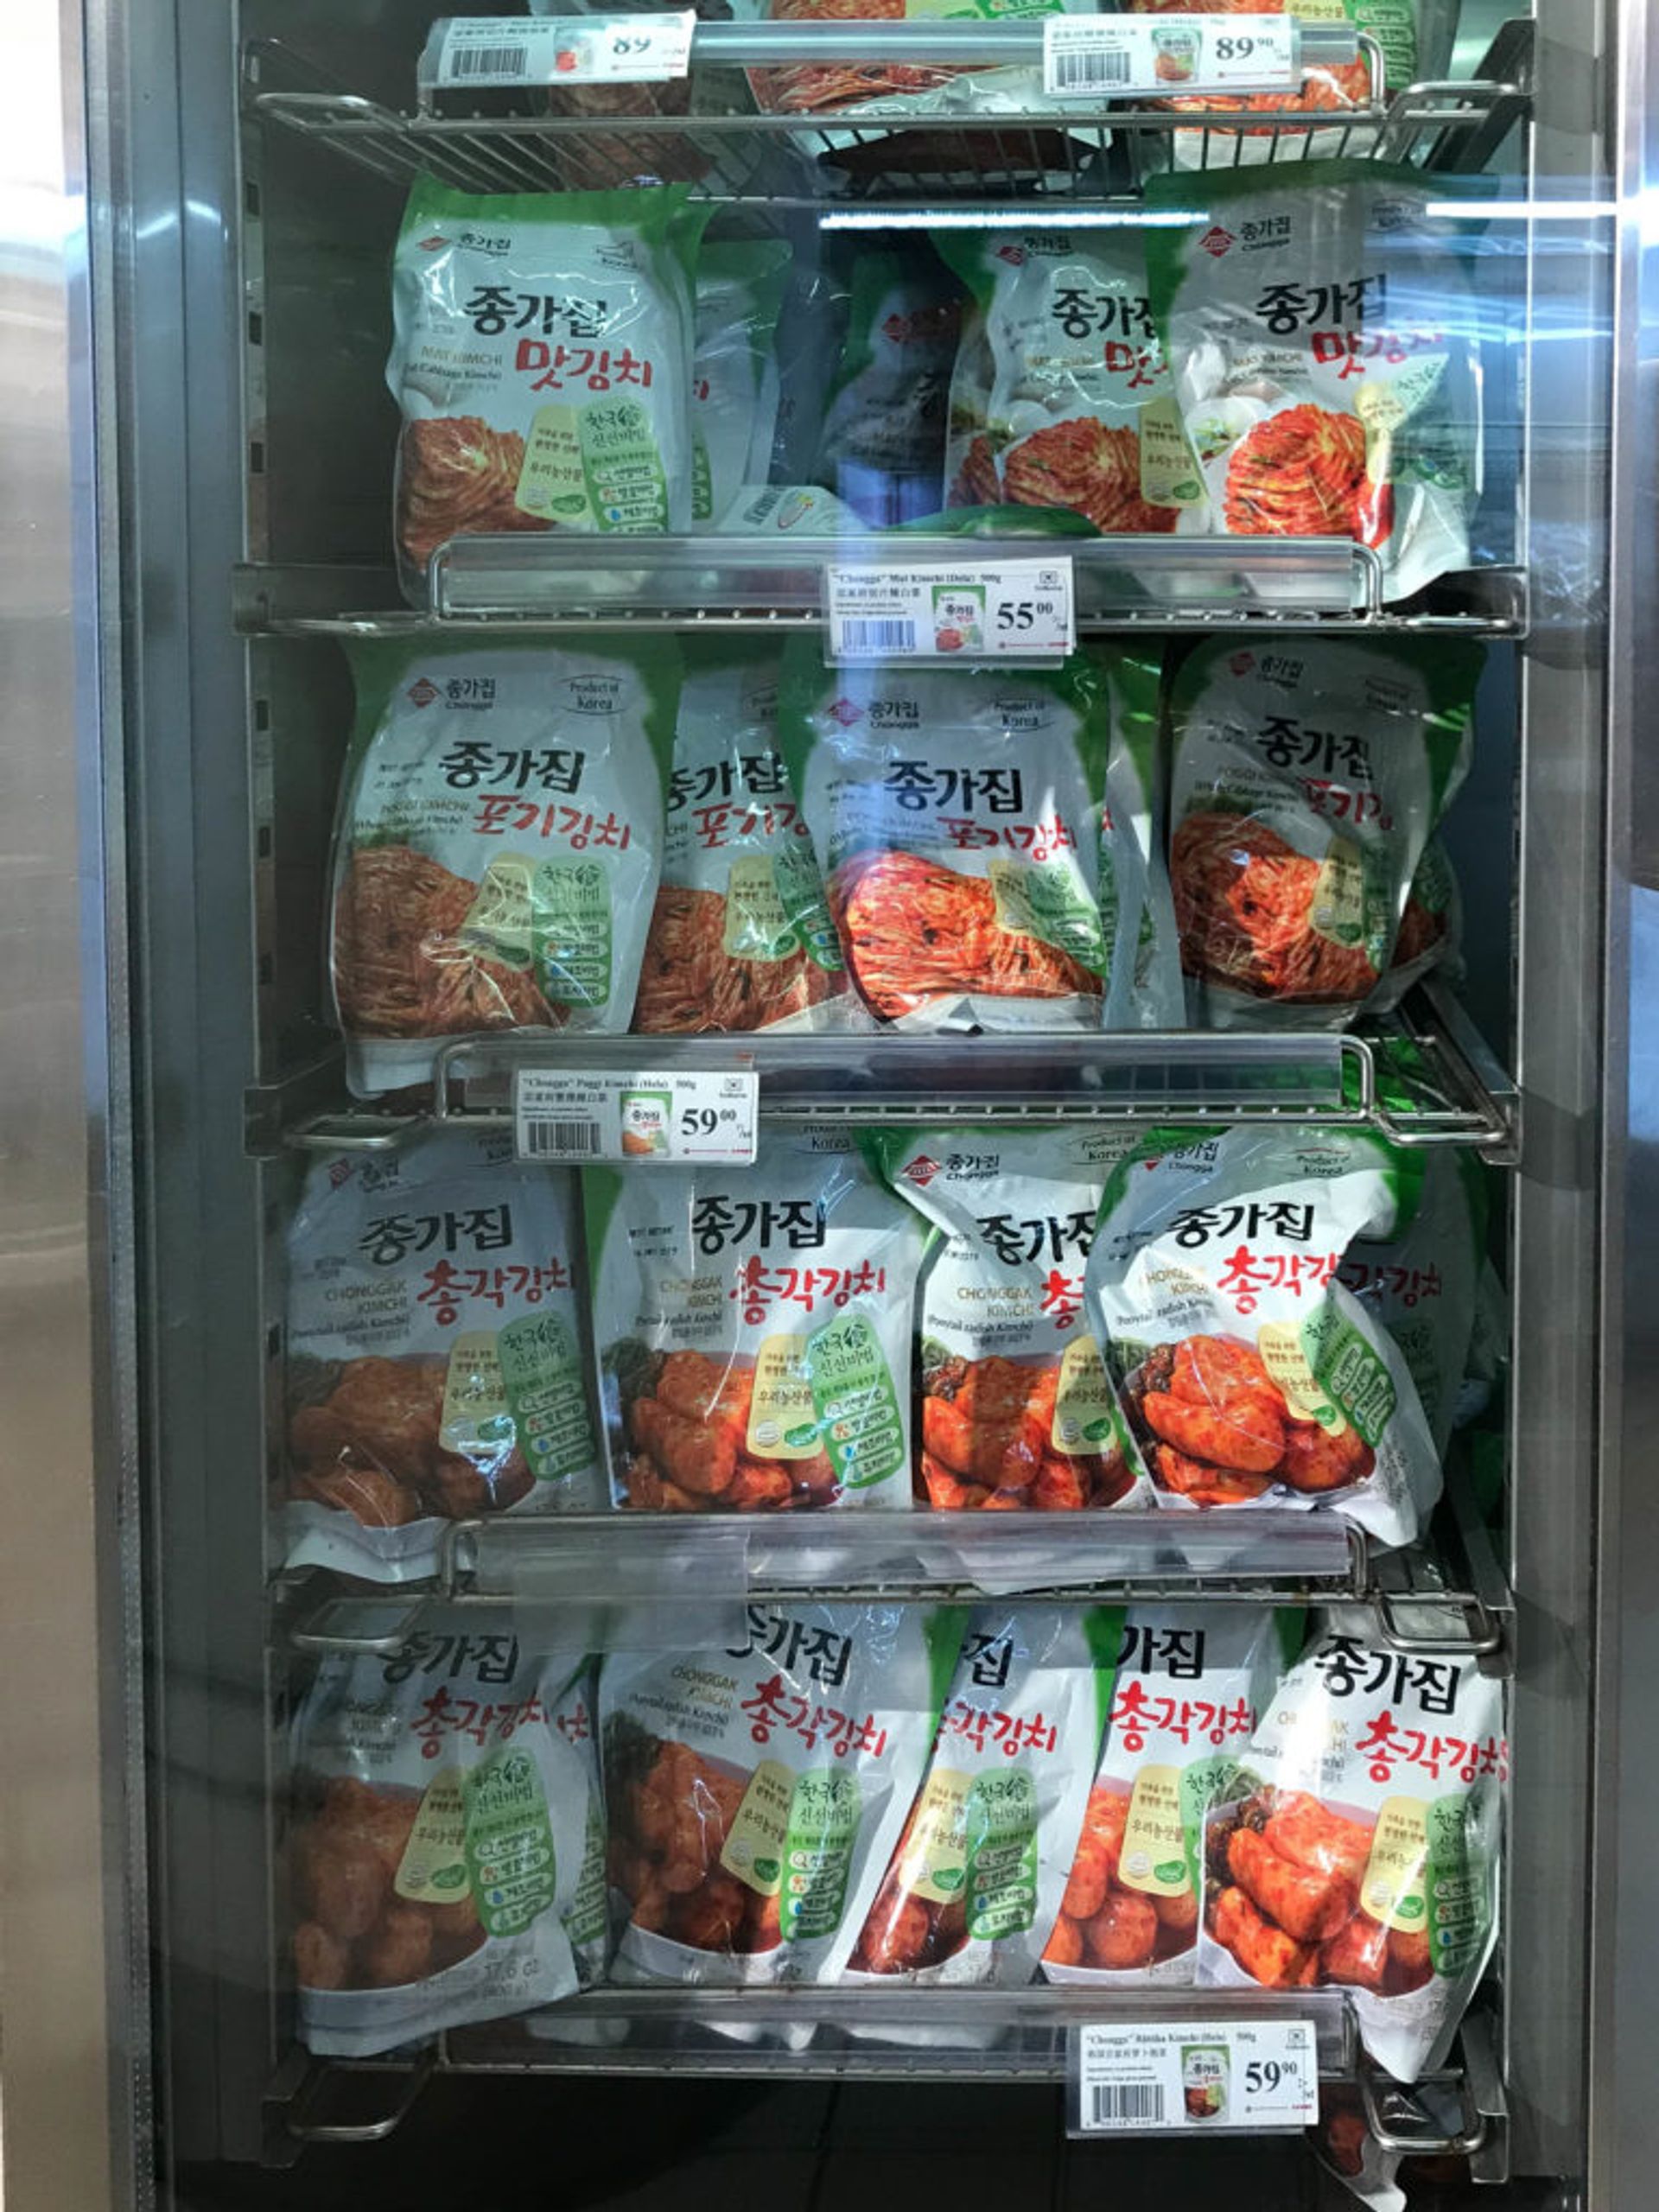 Shelves of frozen food.